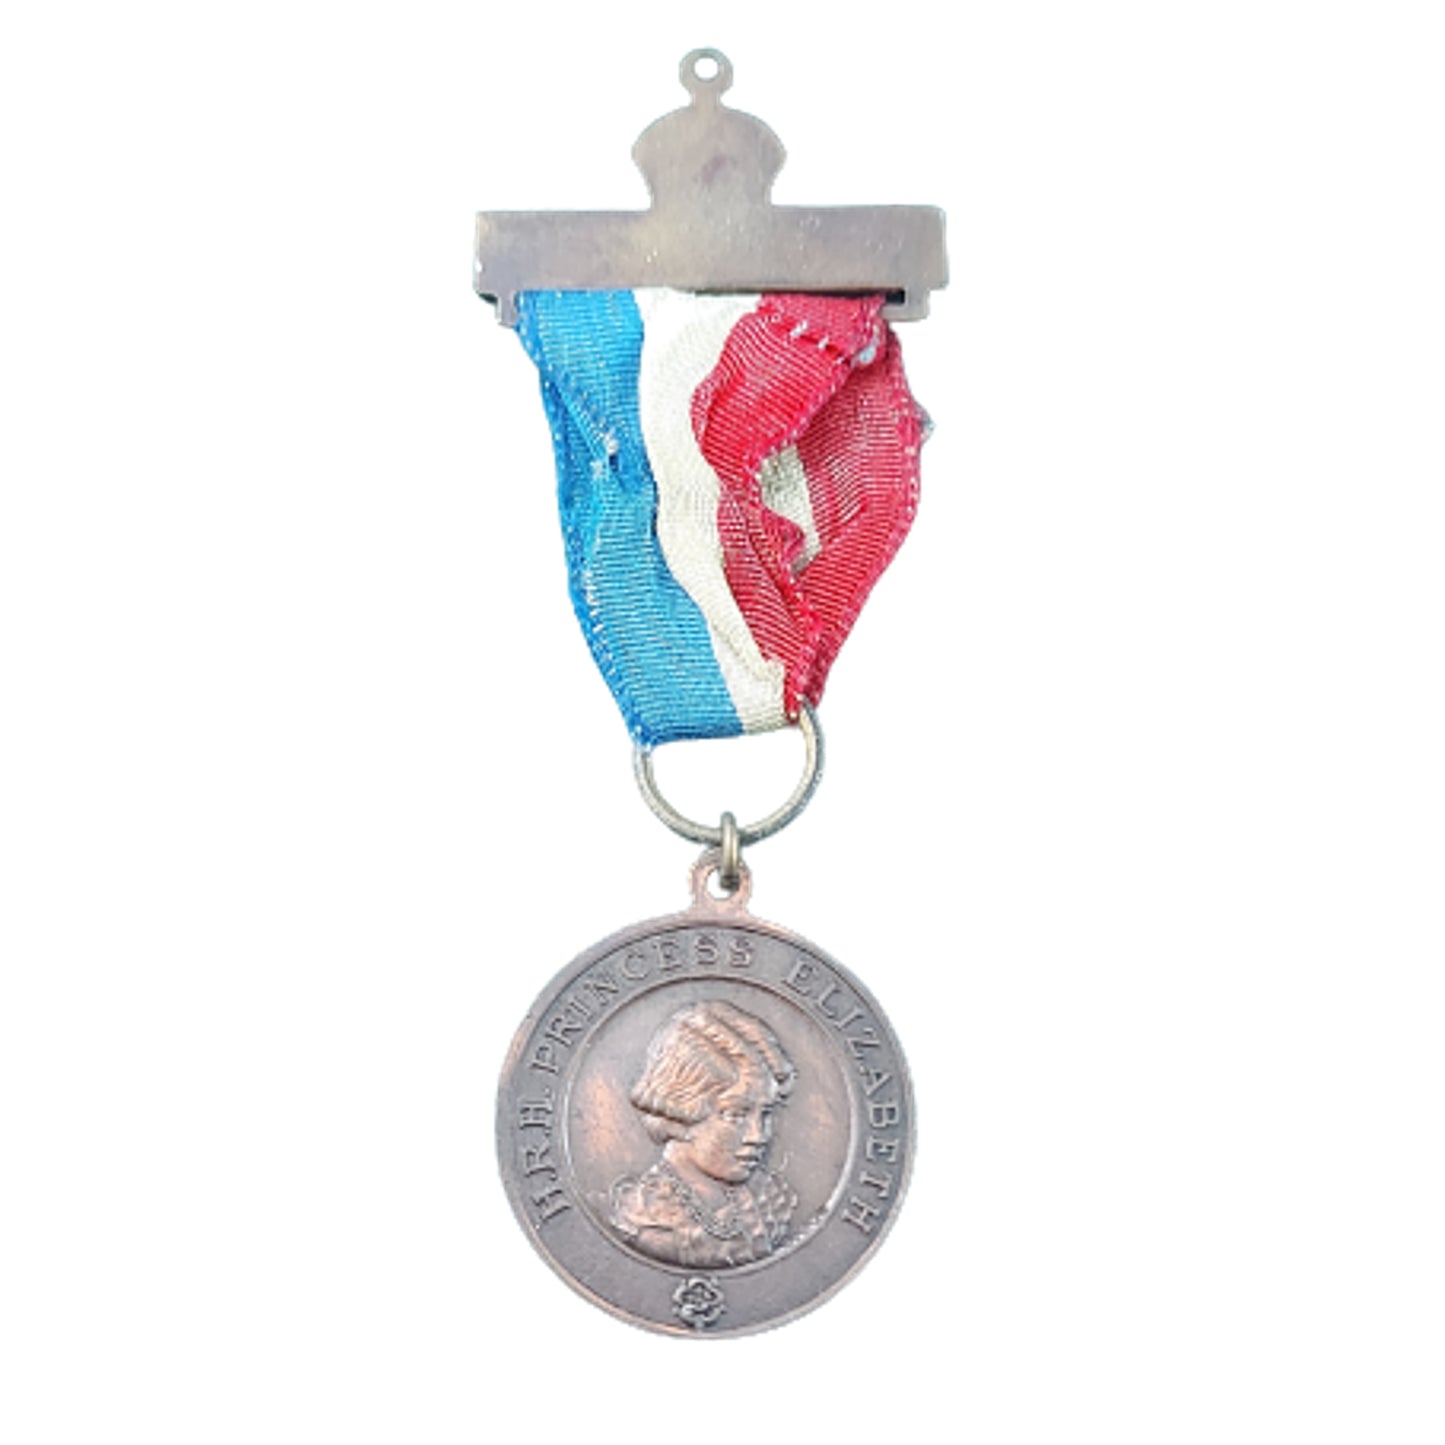 Queen Elizabeth II Commemorative Coronation Medal